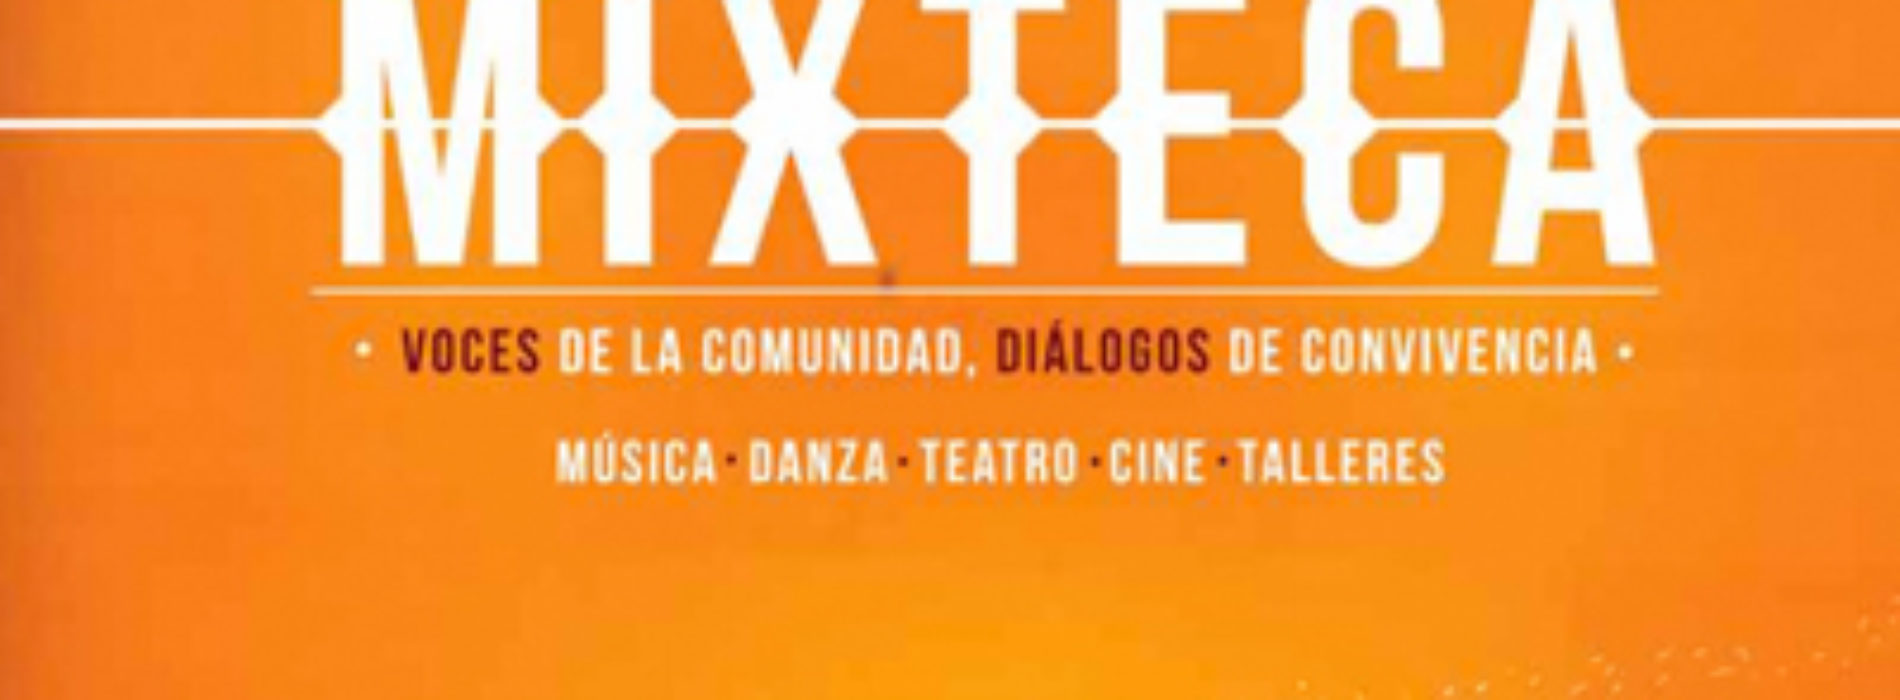 Realizarán XIV Festival Cultural de la Mixteca, hermandad entre los pueblos